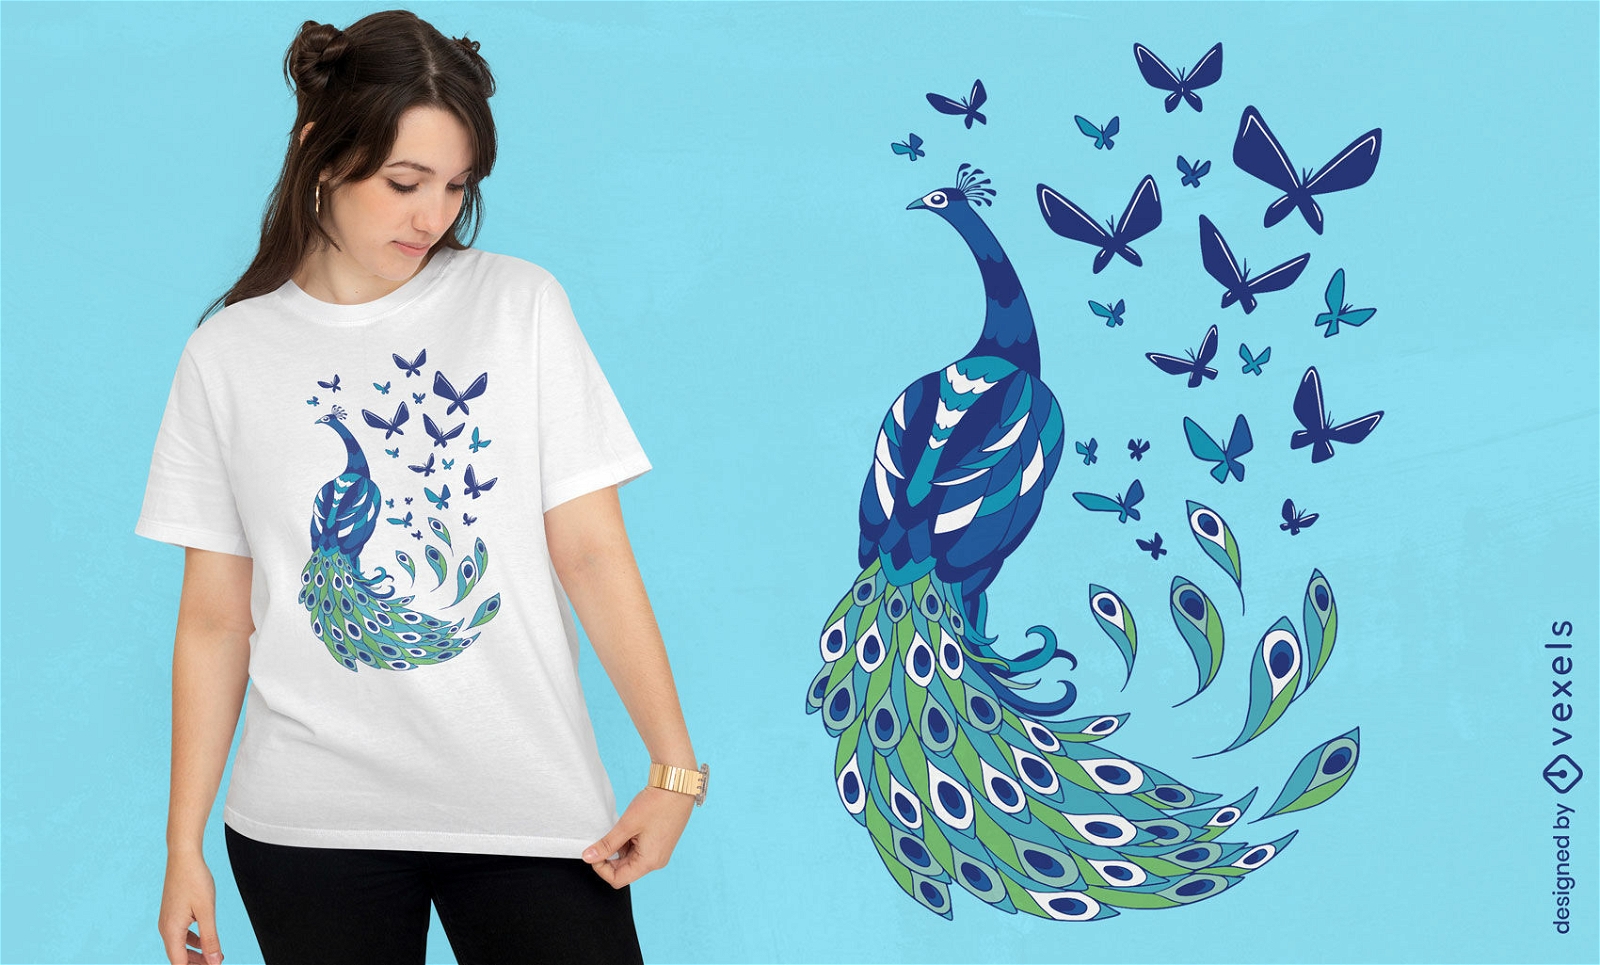 Peacock and butterflies t-shirt design